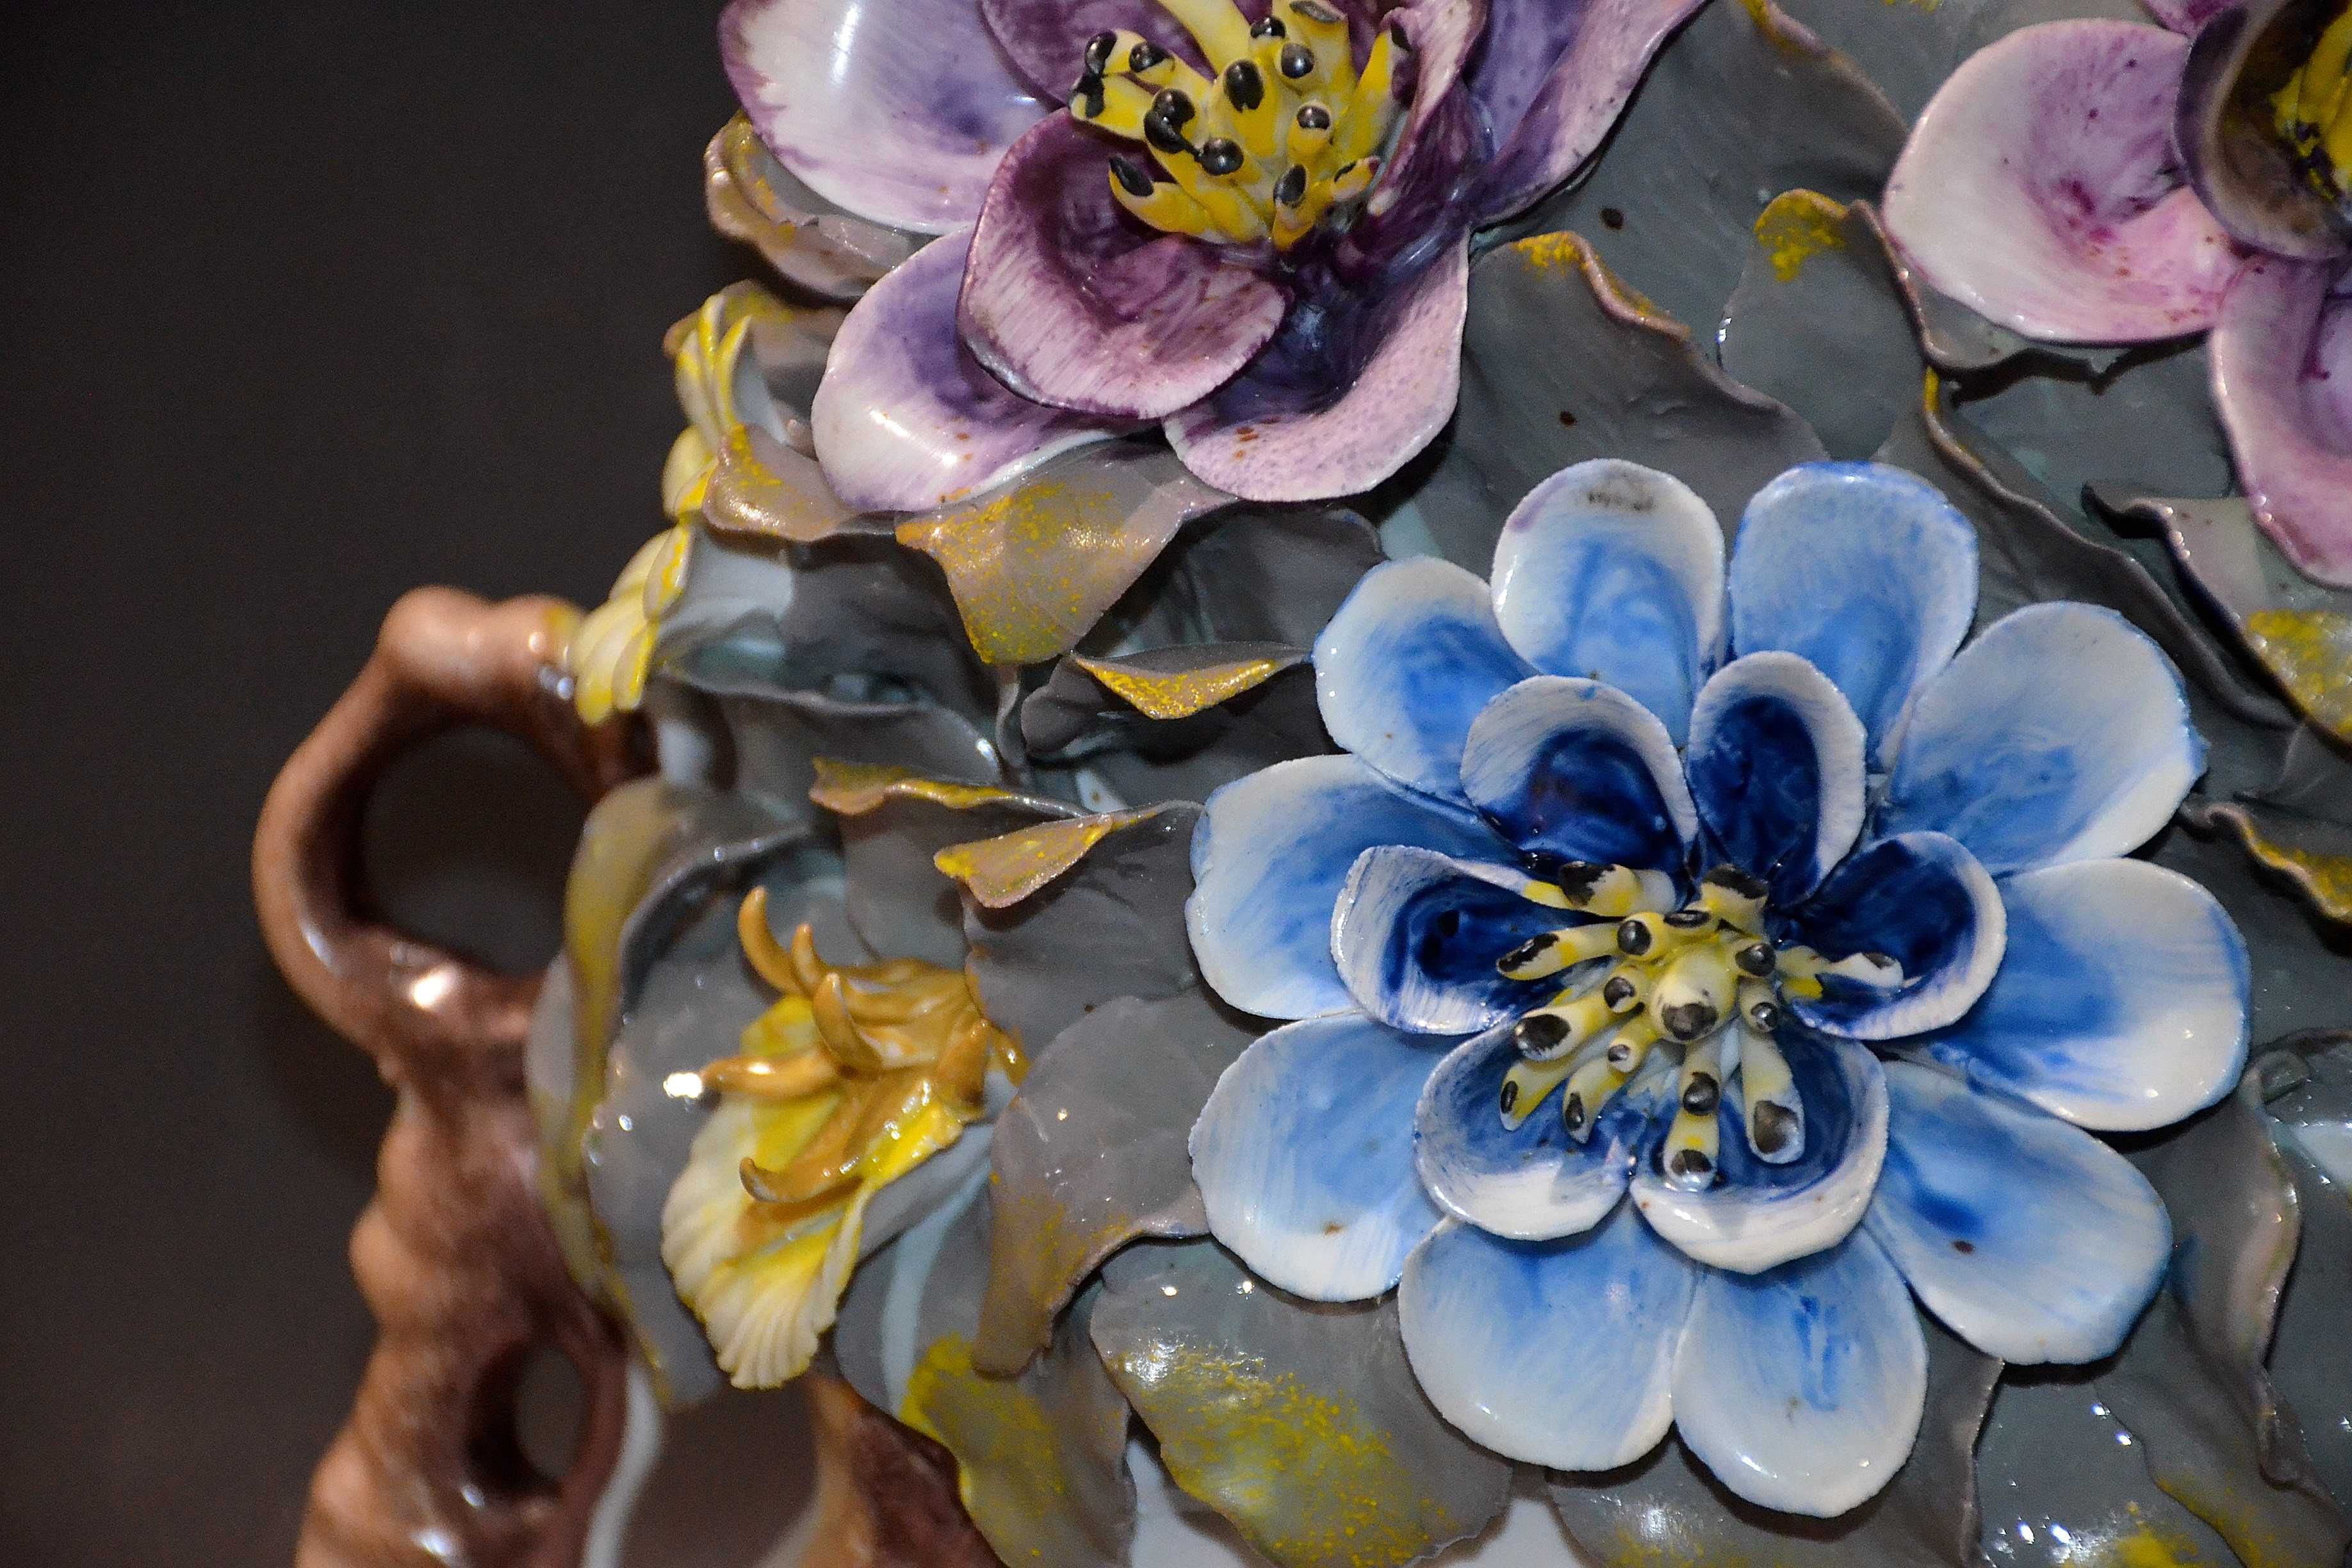 Porcelana ROCERAM aranżacja kwiatowa VIS duża 27,5cmx30,5cm